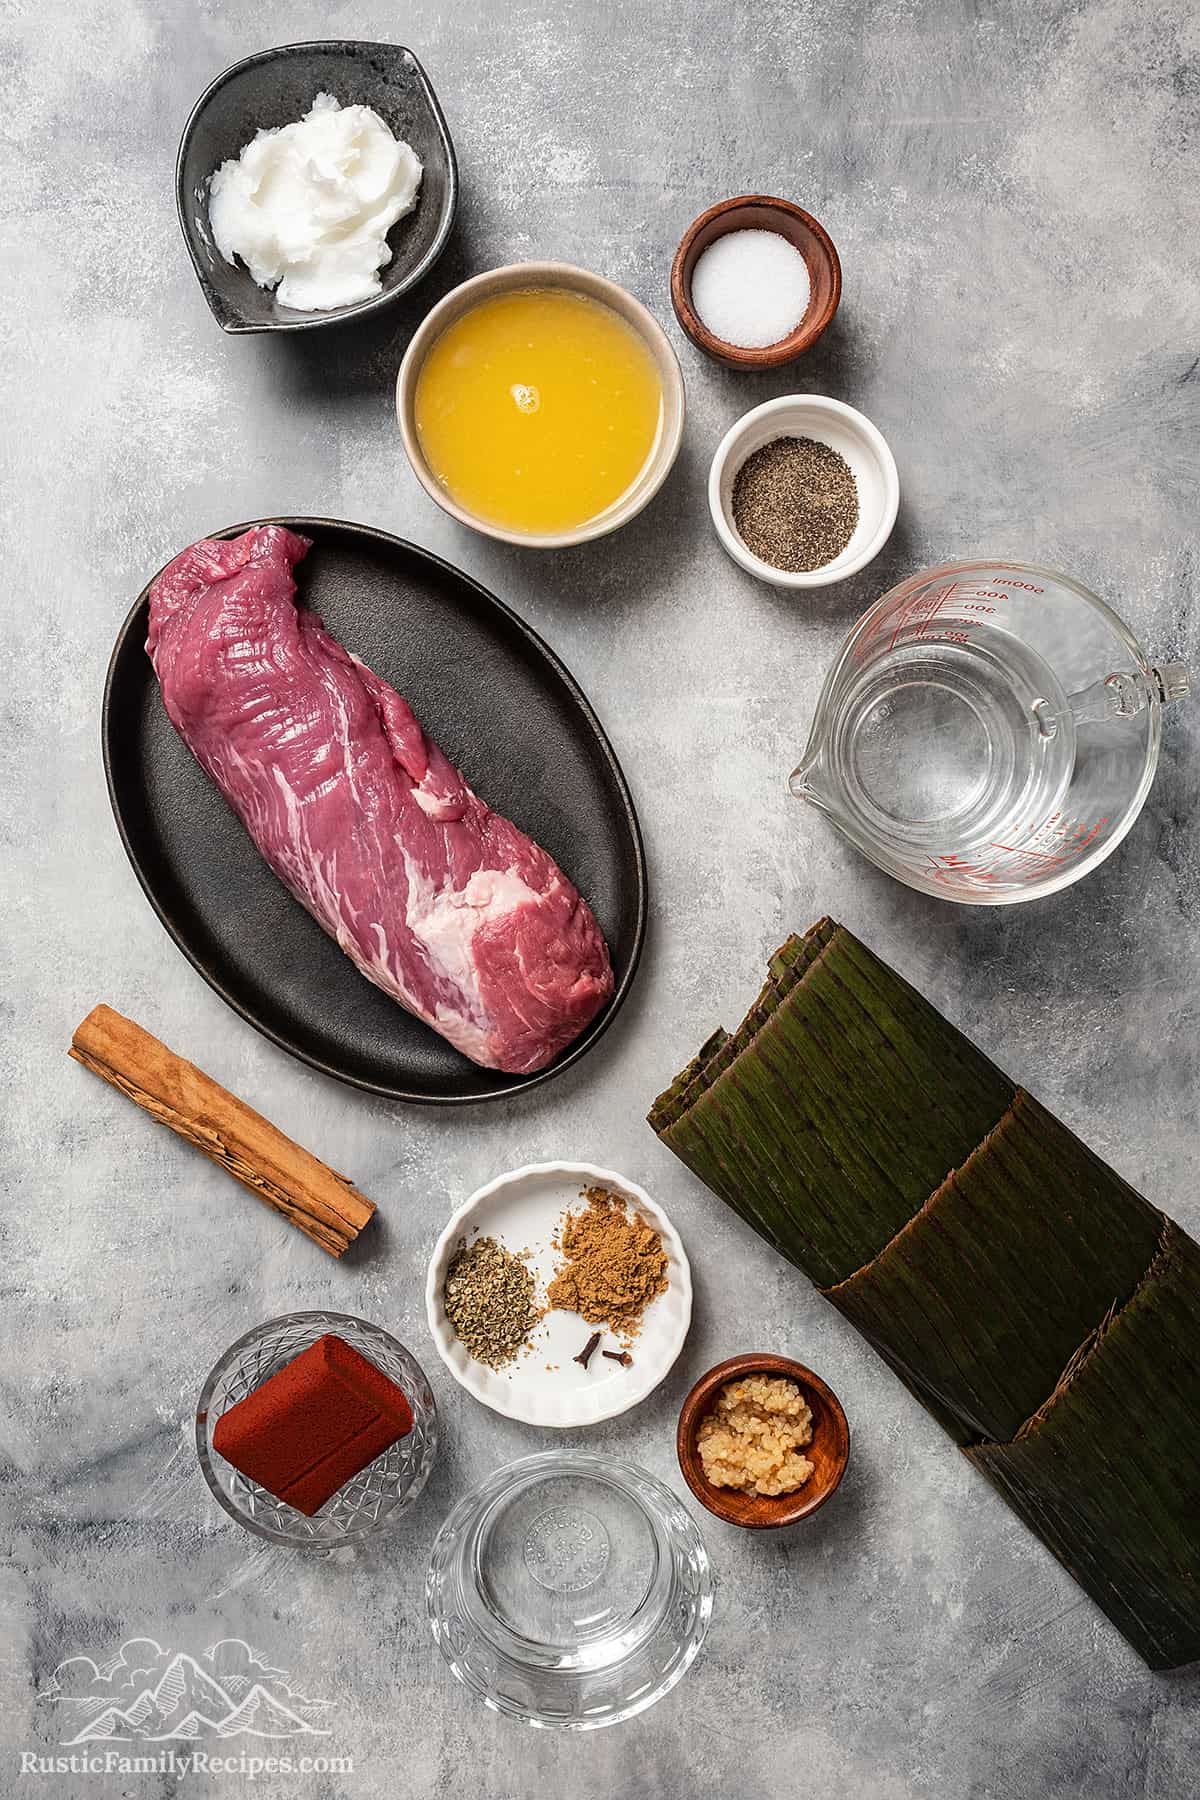 Ingredients for yucatan pork. 